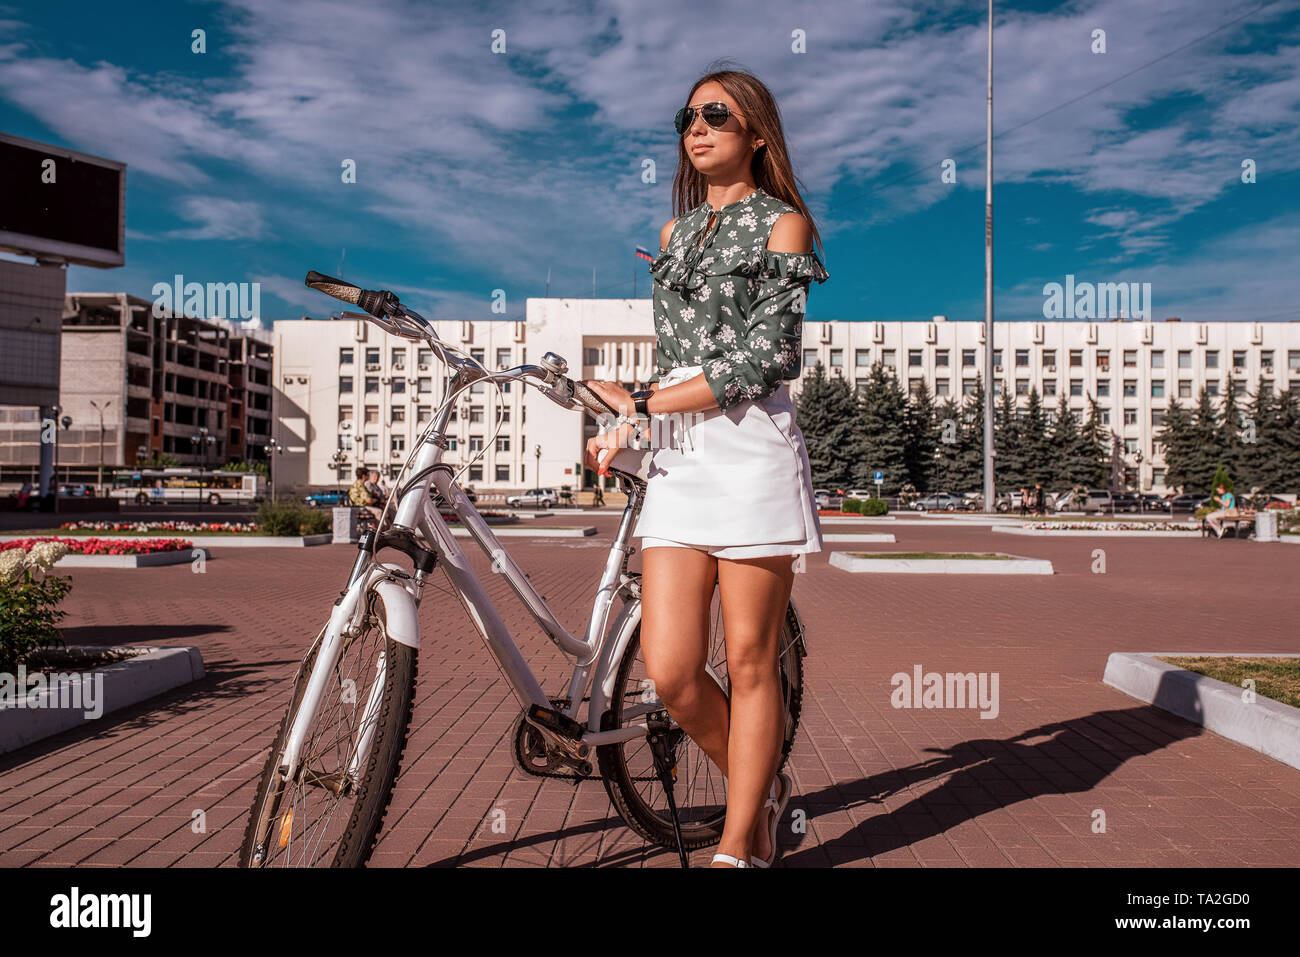 Frau mit einem Fahrrad, Sommer in der Stadt. Hintergrund Gebäude Himmel.  Grüne Jacke und weißen Rock Shorts. Lange Haare Sonnenbrille. Spaziergang  auf dem Fahrrad nach Stockfotografie - Alamy